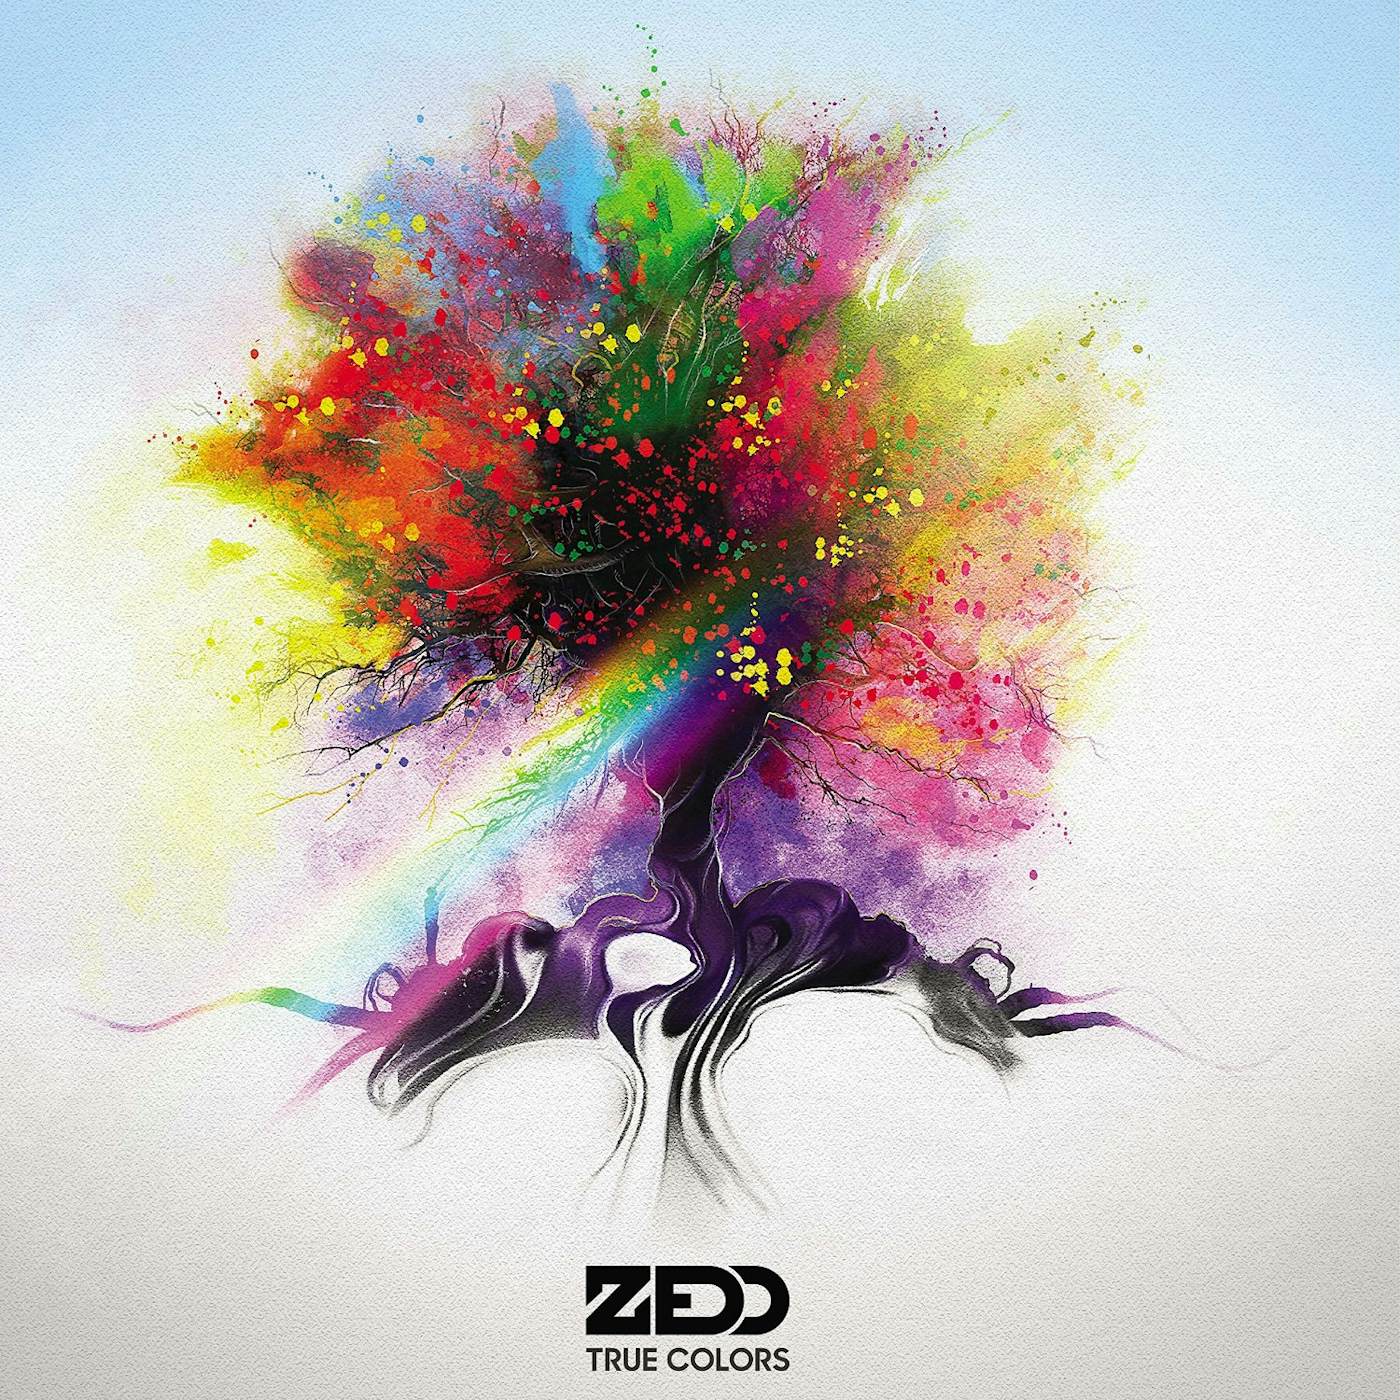 Zedd True Colors Vinyl Record